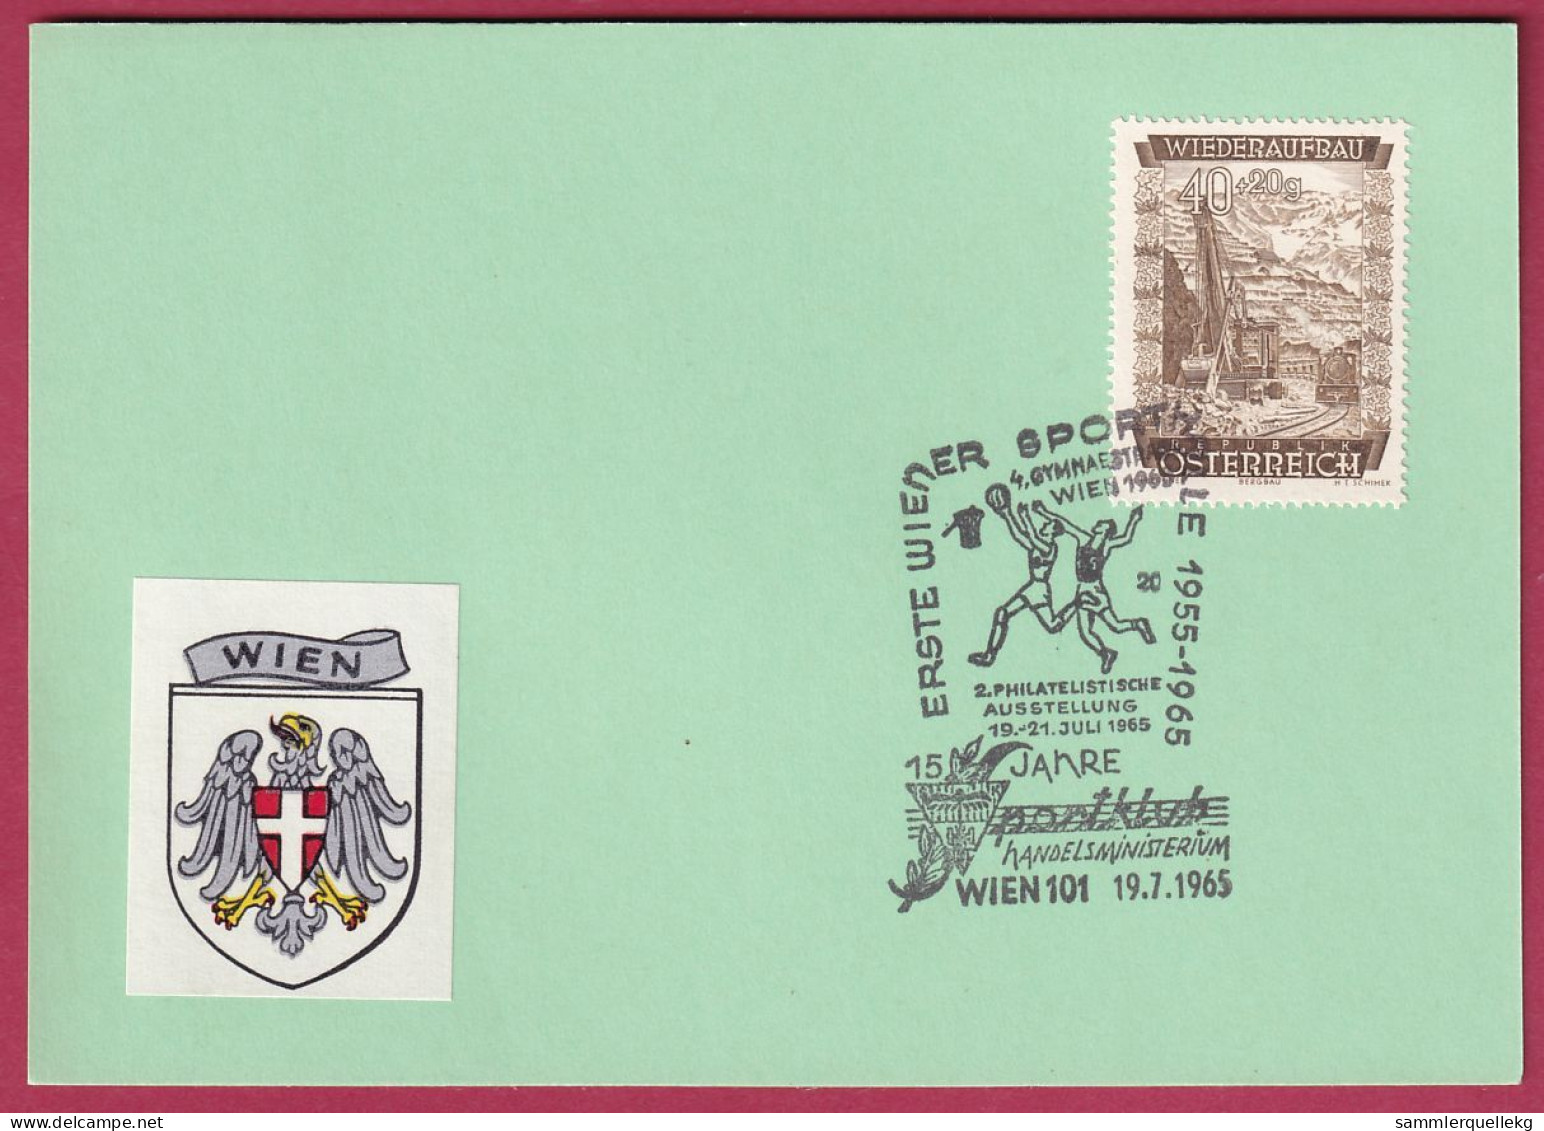 Österreich MNr. 861 Sonderstempel 19. 7. 1966 15 Jahre Sportklub Handelministerium - Storia Postale